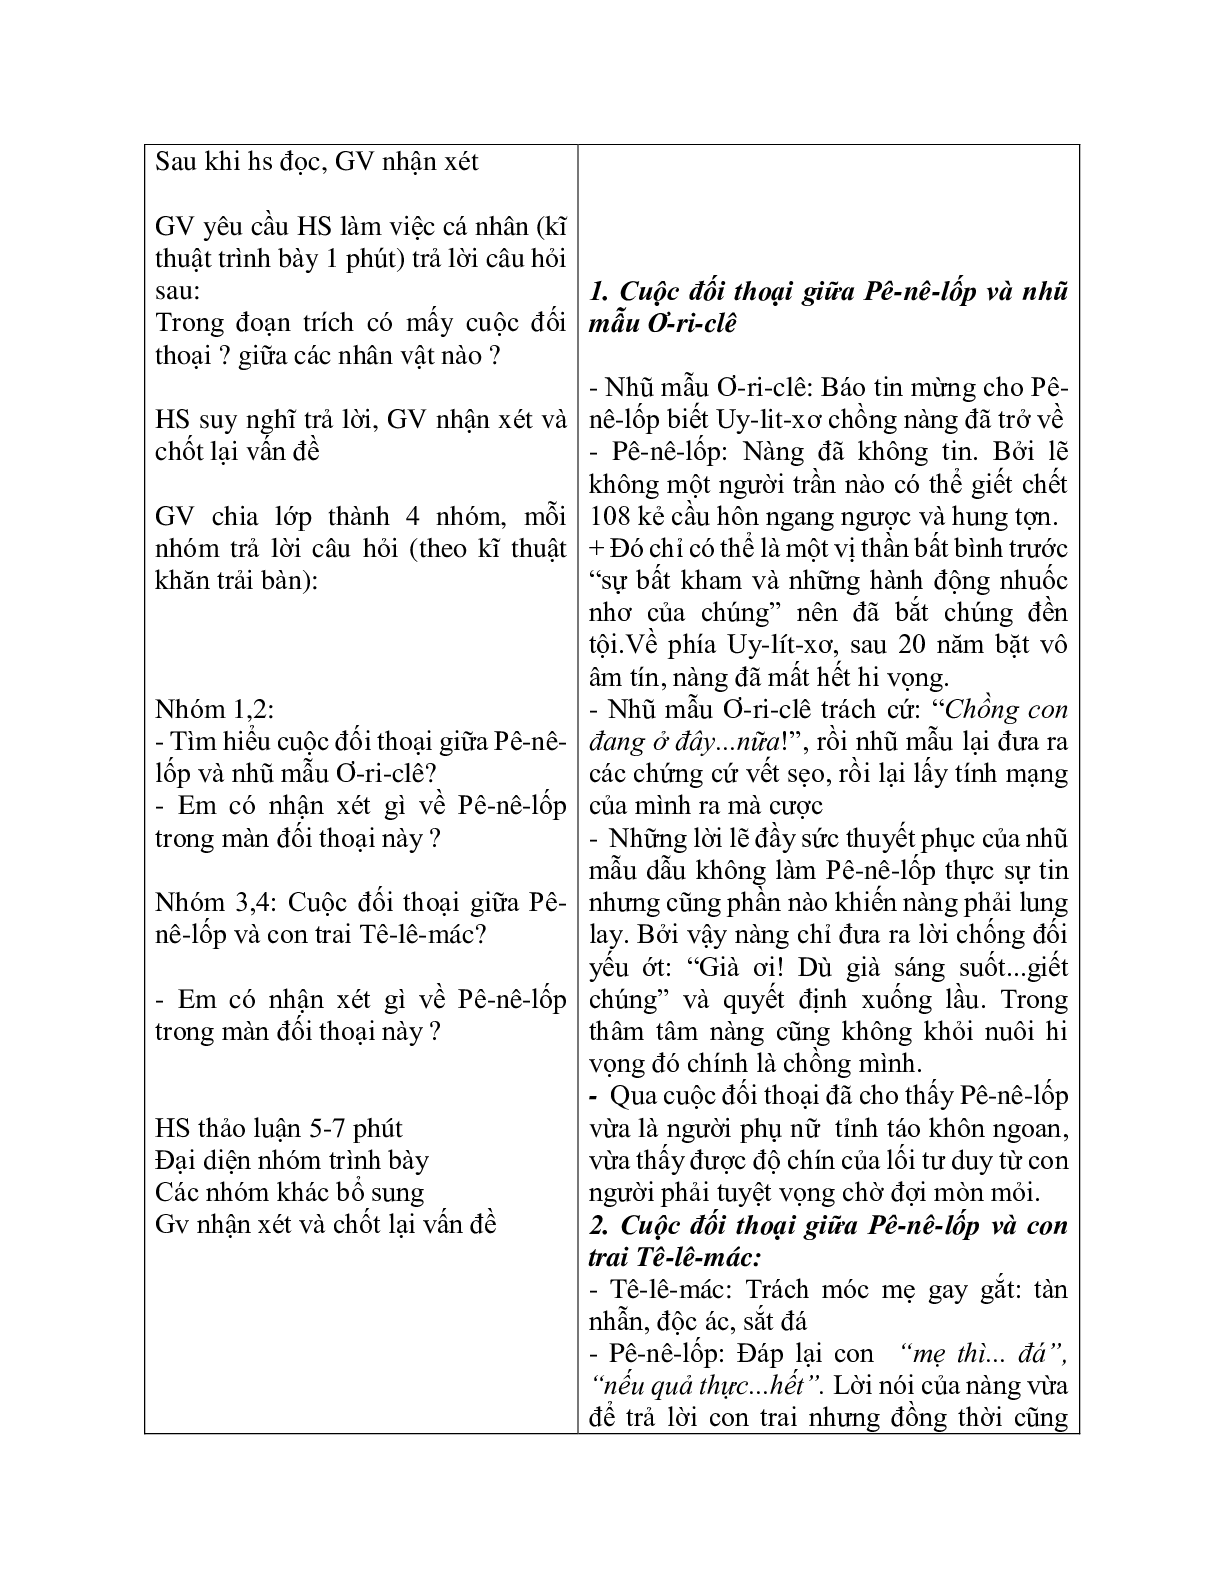 Giáo án ngữ văn lớp 10 Tiết 22, 23: Uy-Lit-xơ trở về (trang 4)